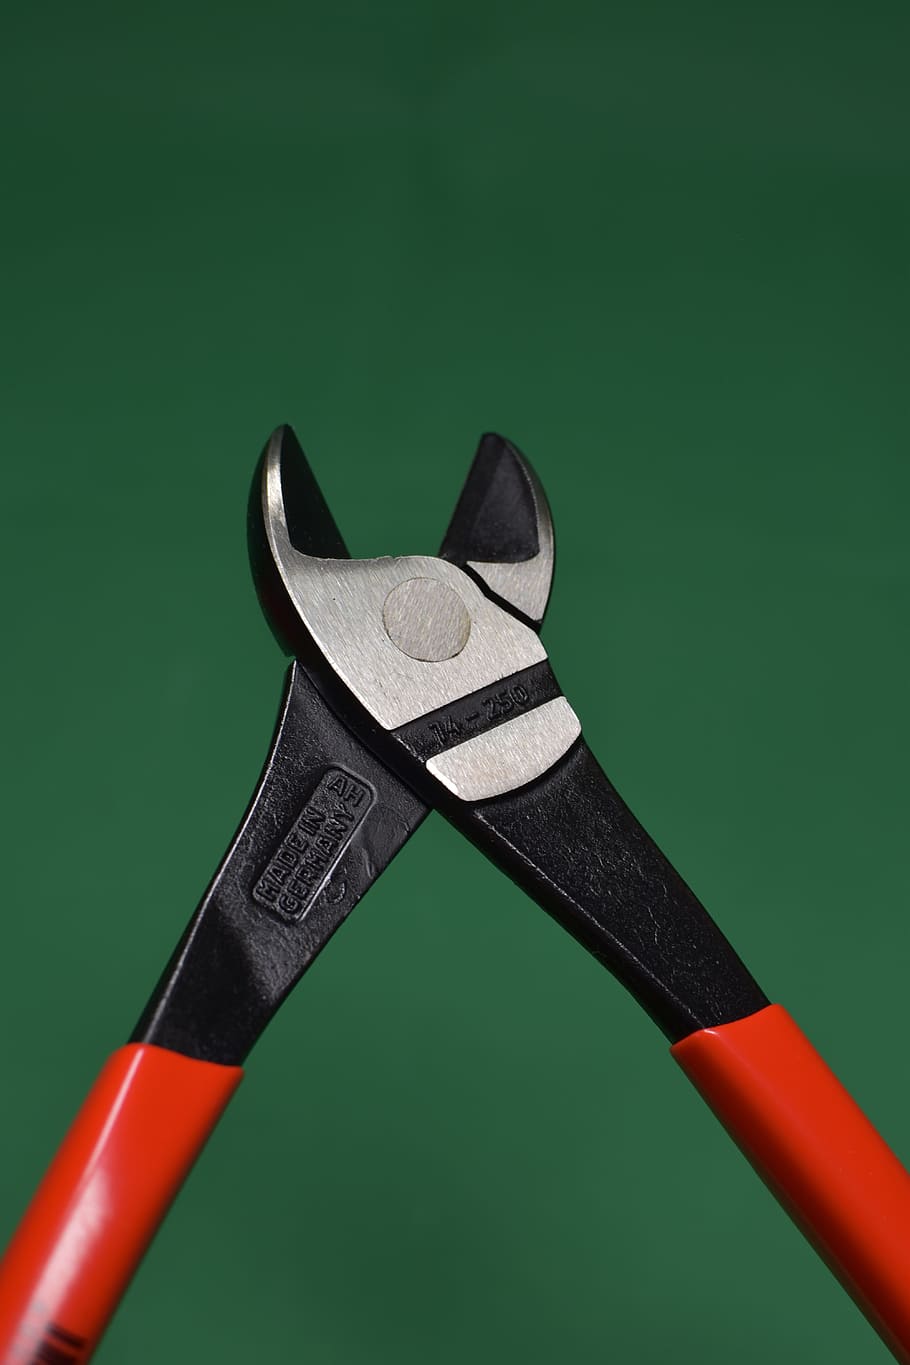 HD wallpaper: Fence, Plier, Tool, Cuter, Cutter, bolt cutter, equipment,  work Tool